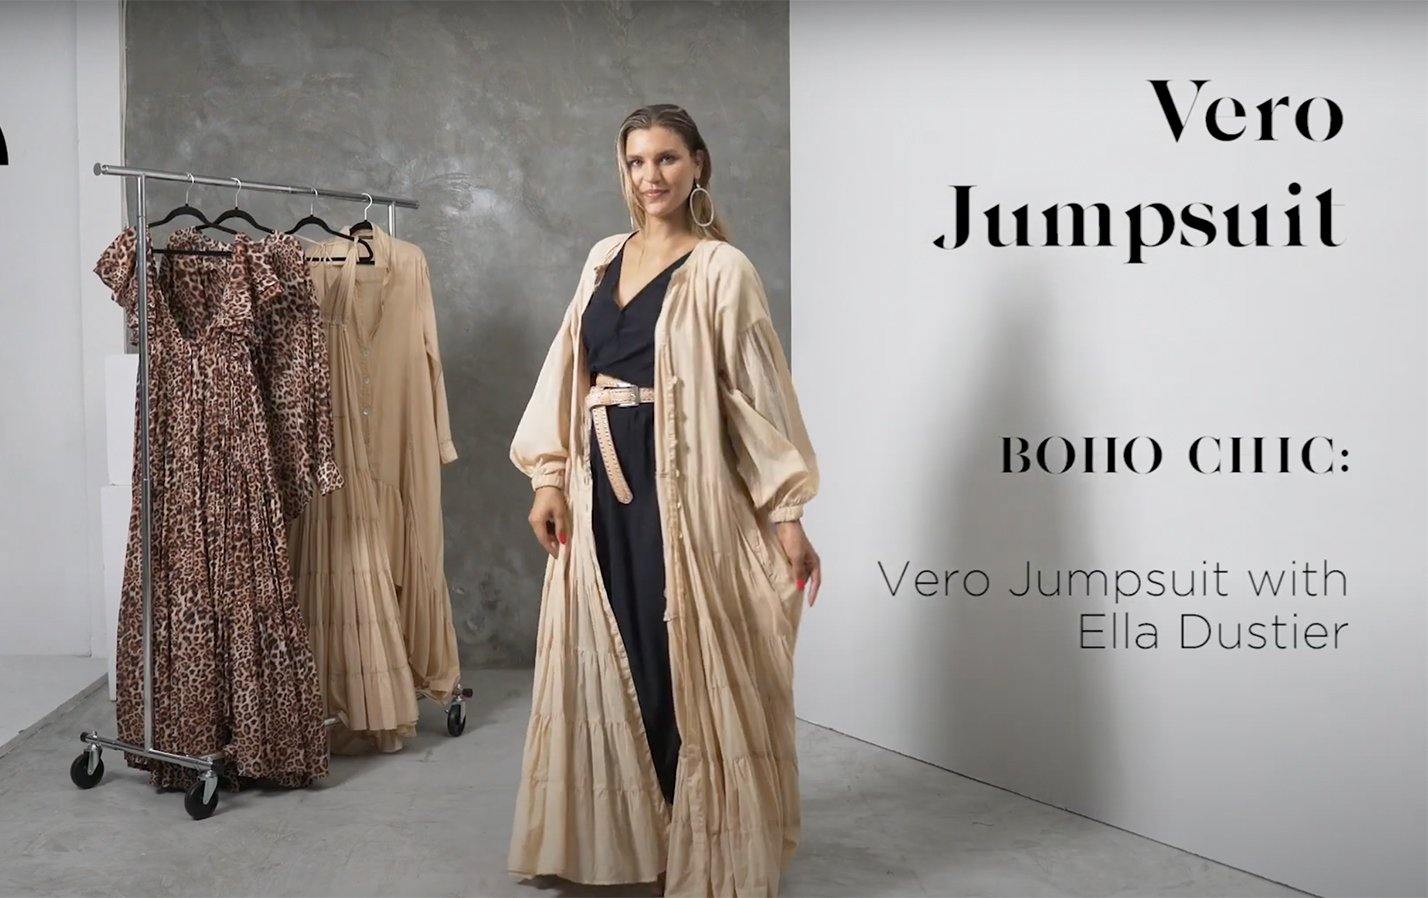 HOW TO STYLE - VERO JUMPSUIT - Erika Peña